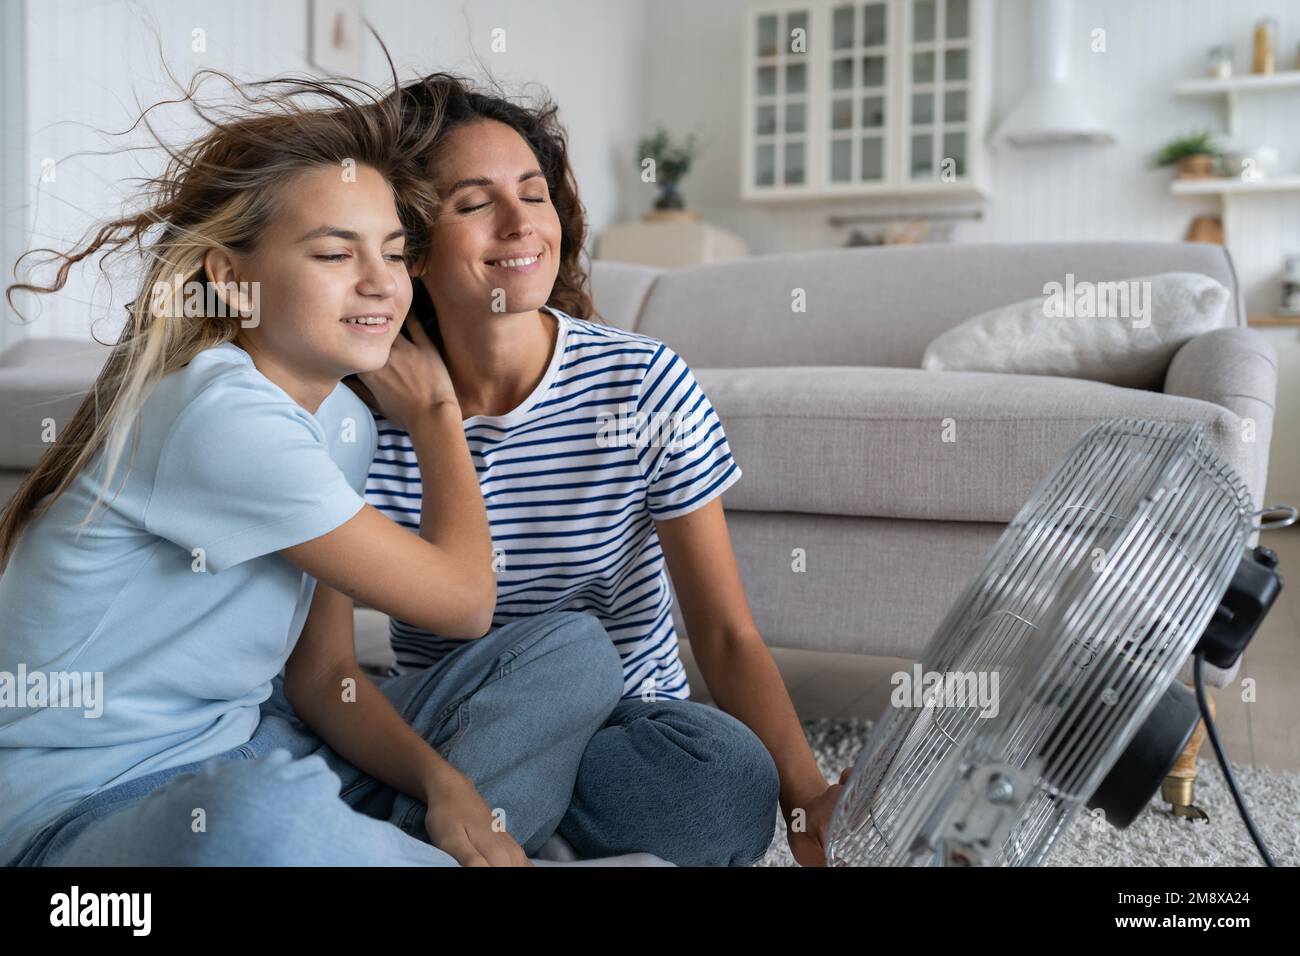 La mère et la fille décontractées et optimistes aiment le vent provenant du ventilateur se trouve au sol dans le salon Banque D'Images